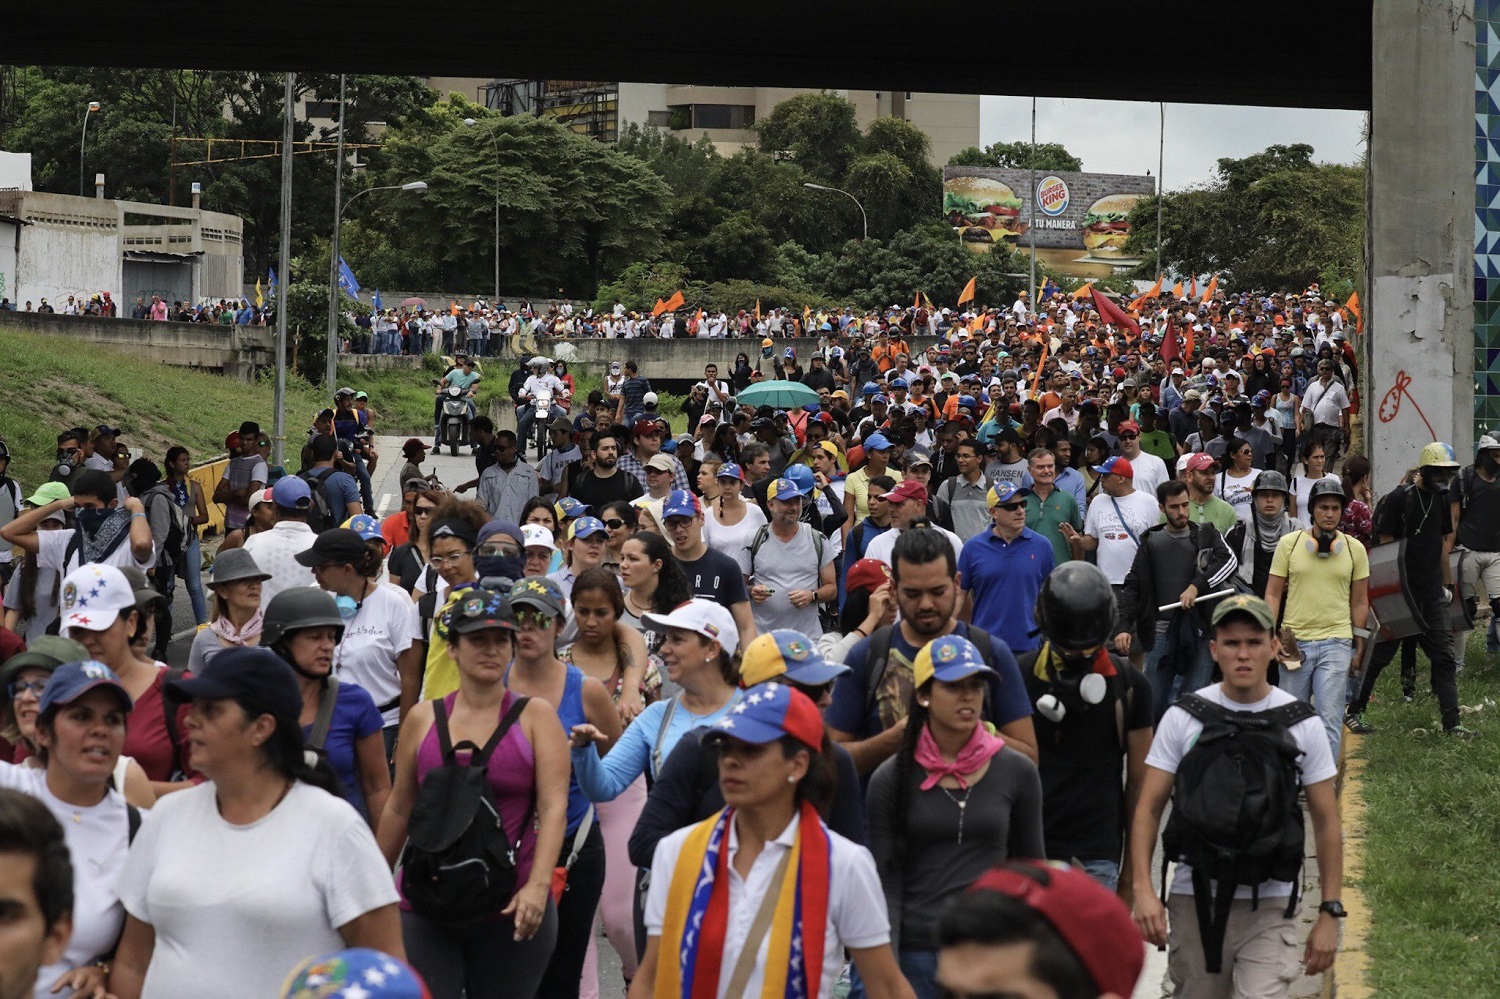 CAR05. CARACAS (VENEZUELA), 19/04/2017.- Cientos de venezolanos opositores participan en una manifestación hoy, lunes 19 de junio de 2017, en Caracas (Venezuela). La oposición venezolana marcha hoy desde más de 30 puntos de Caracas hasta la sede del Consejo Nacional Electoral (CNE), en el centro de la ciudad, pese a varias restricciones en el transporte público y los puntos de control desplegados por las autoridades. EFE/Miguel Gutiérrez